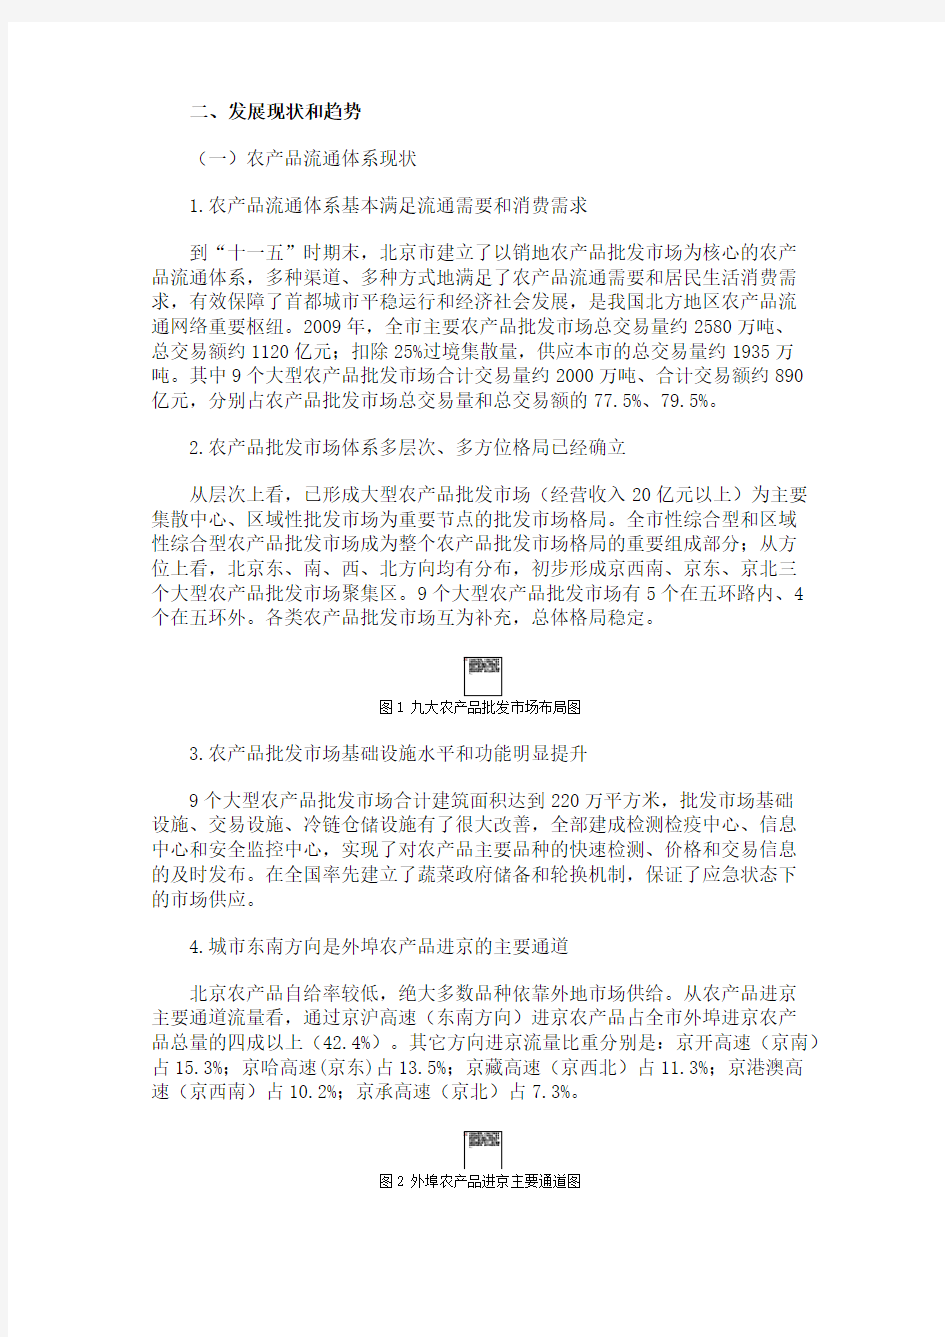 关于印发《北京市“十二五”时期农产品流通体系发展规划》的通知(组图)